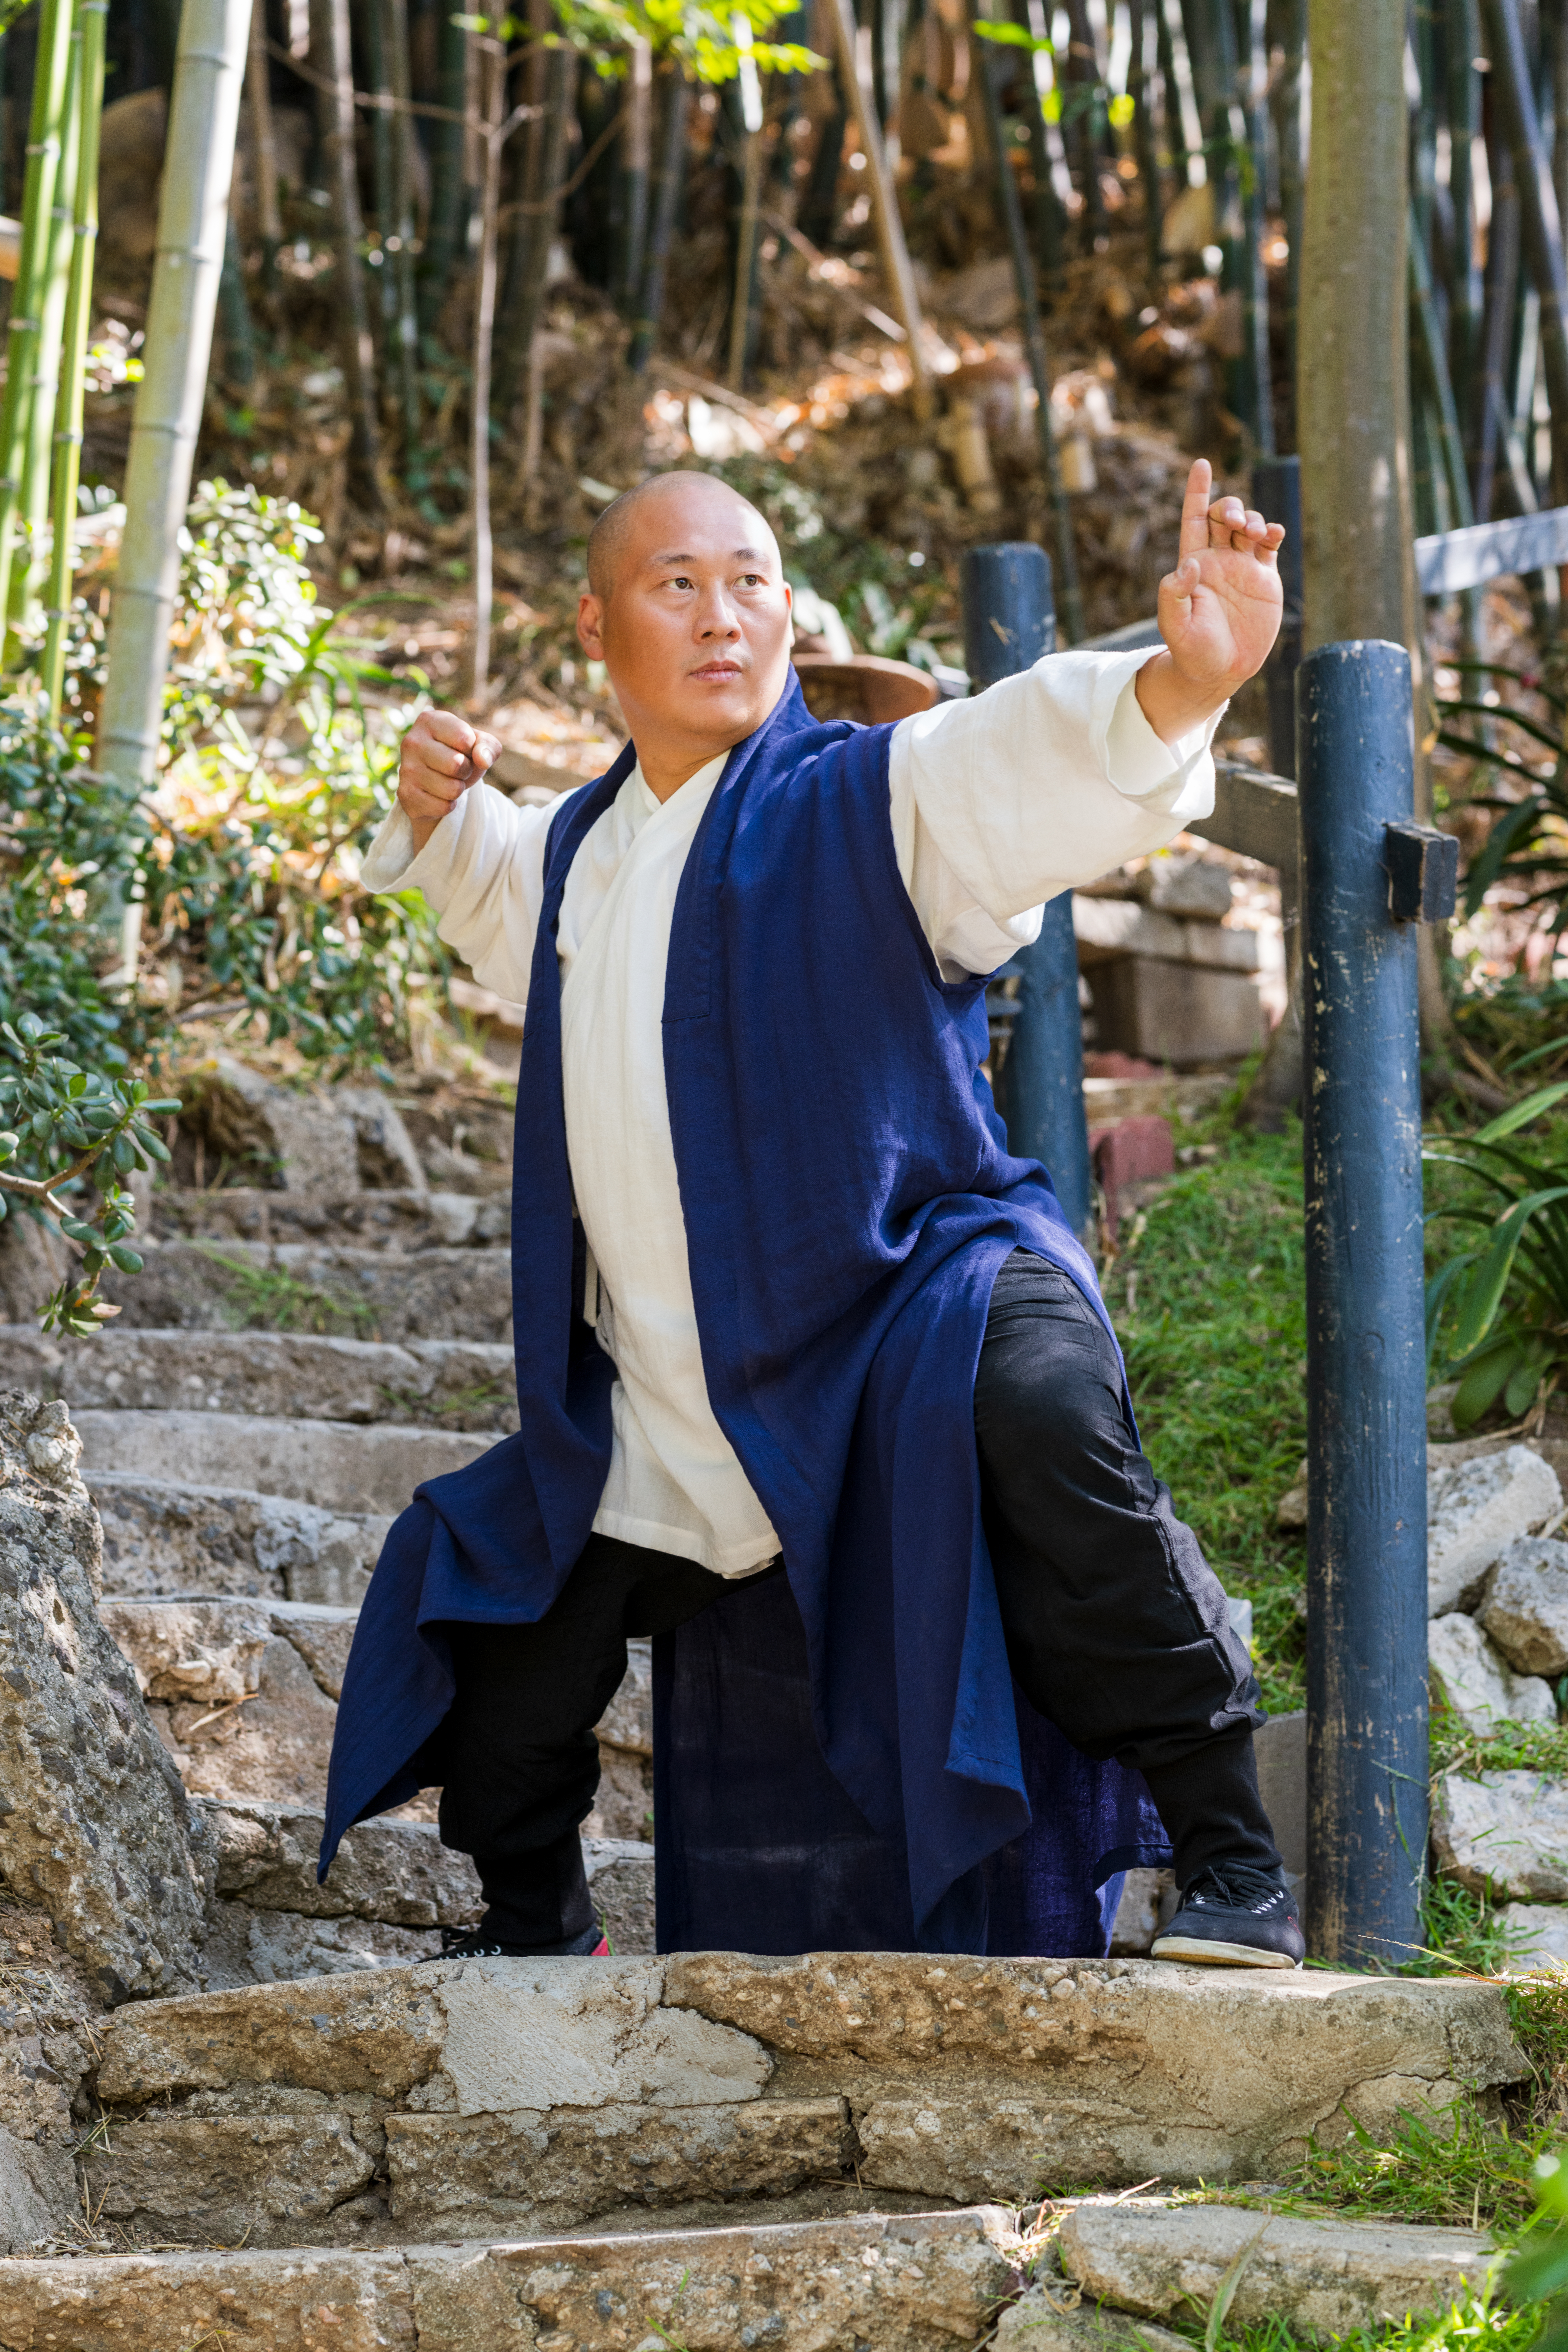 Shaolin Grand Master Shi Yanxu in a Qigong stance